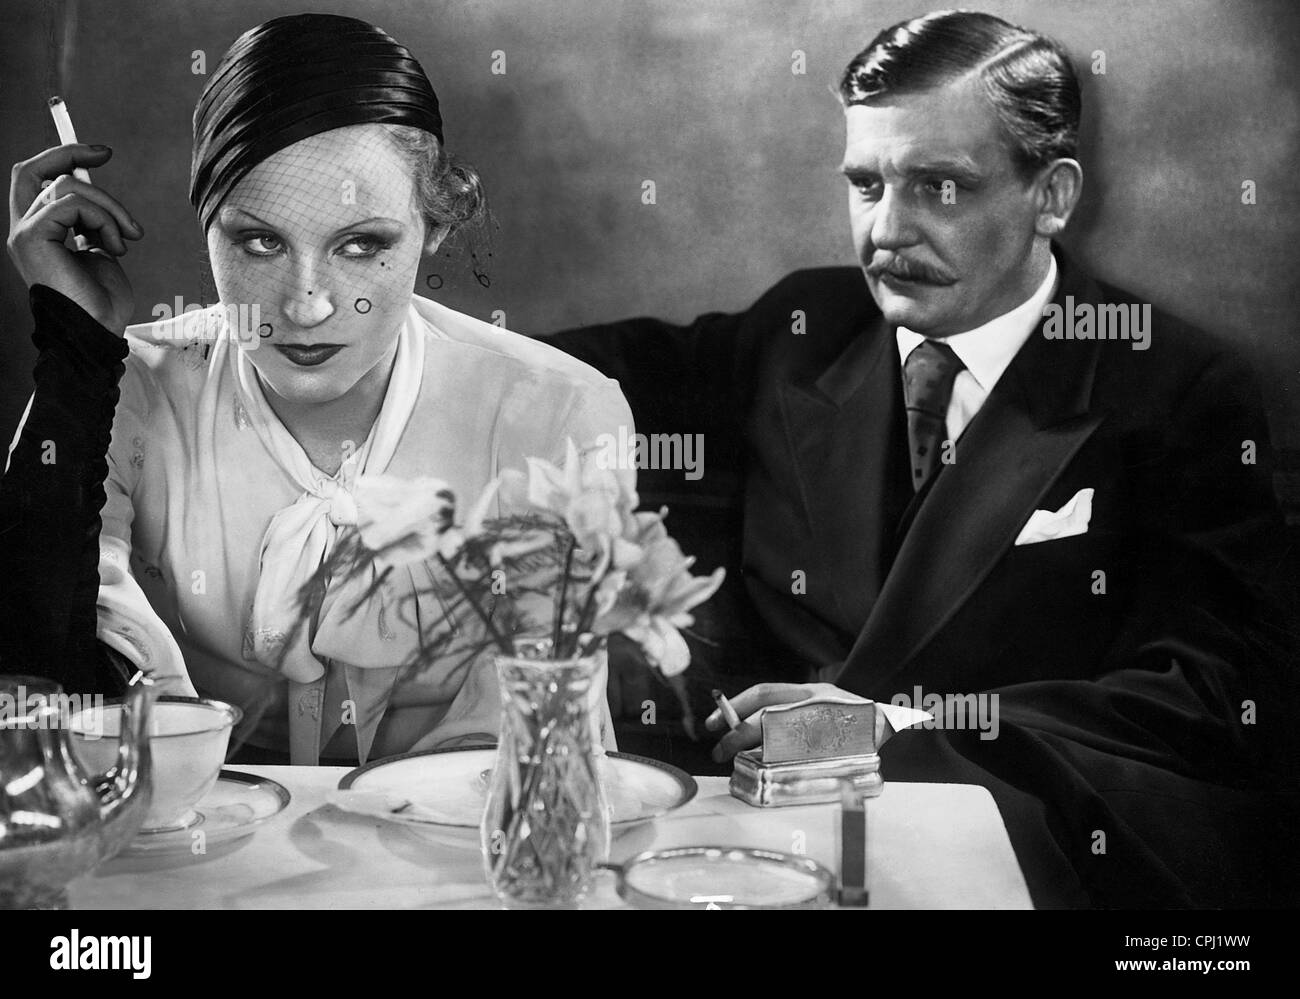 Brigitte Helm und Rudolf Forster in "Die Gräfin von Monte Christo", 1932 Stockfoto